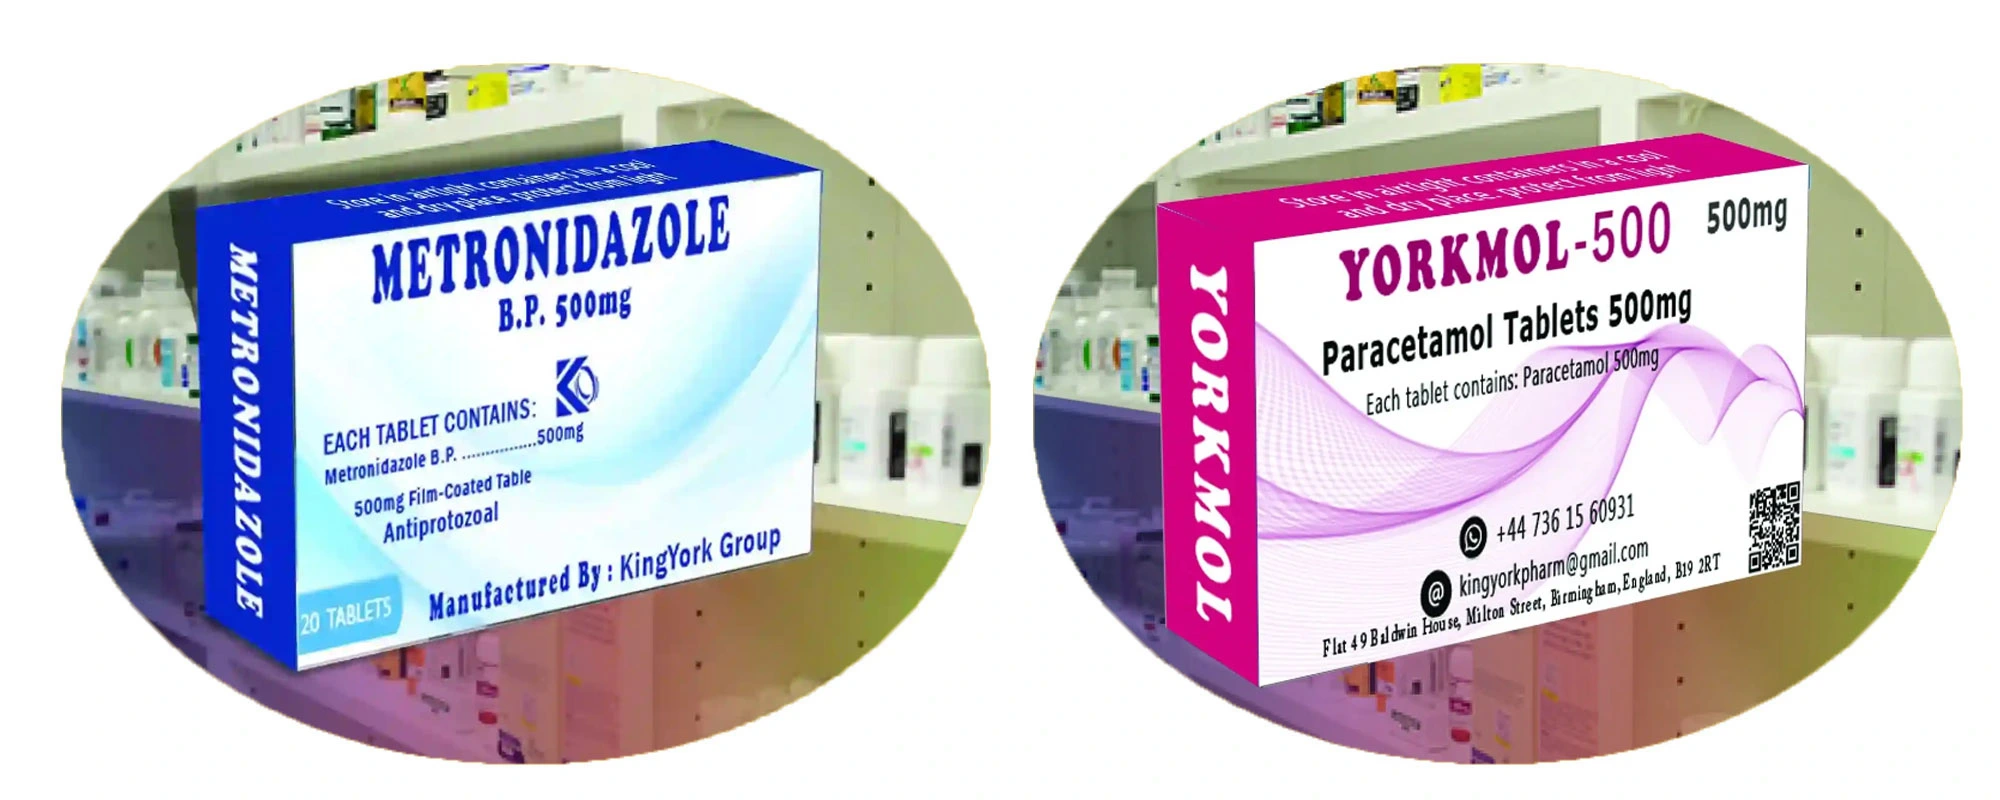 'Paracetamol Tablets 500mg', 'Paracetamol Tablets', 'Paracetamol'